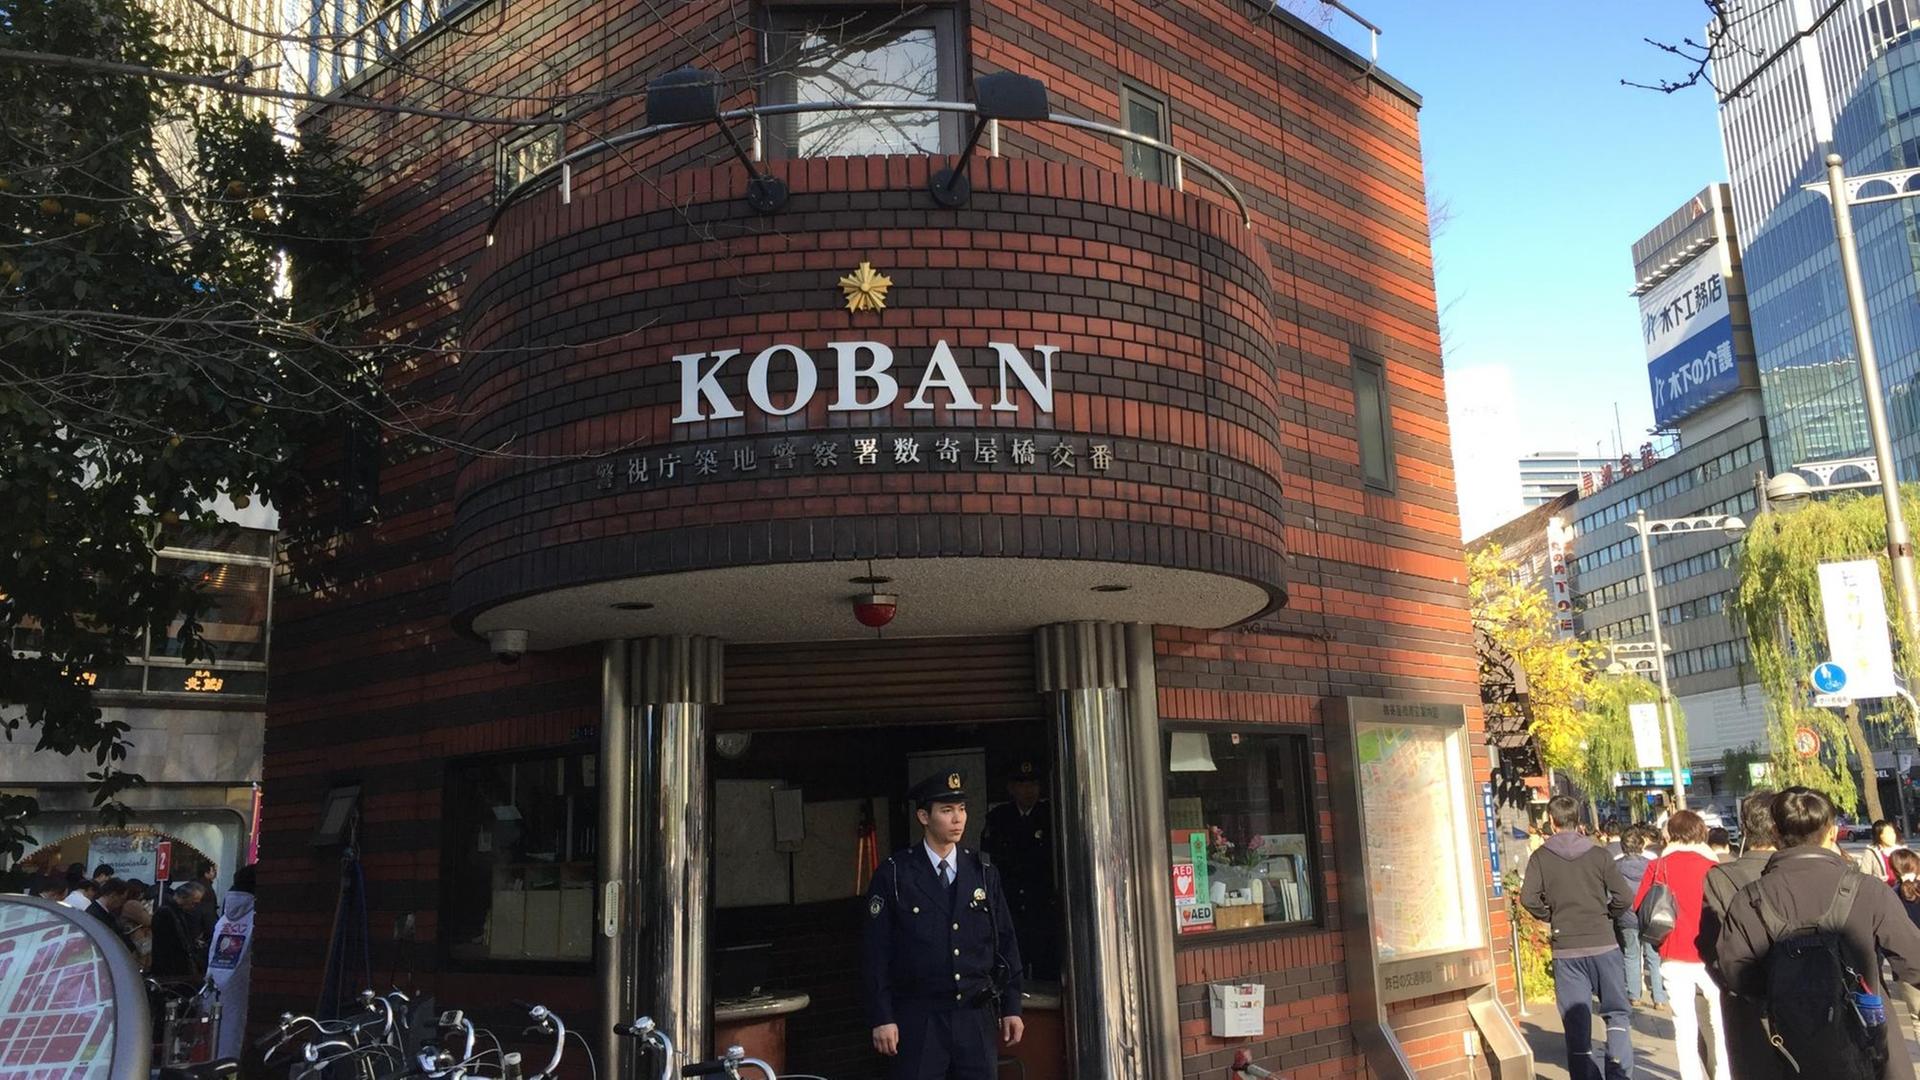 Ein Koban (japanische Mini-Polizeiwache) im Tokioter Bezirk Ginza mit dazugehörigem Polizisten davor. Auf dem Land wohnen die Bezirkspolizisten sogar in ihren Häuschen.